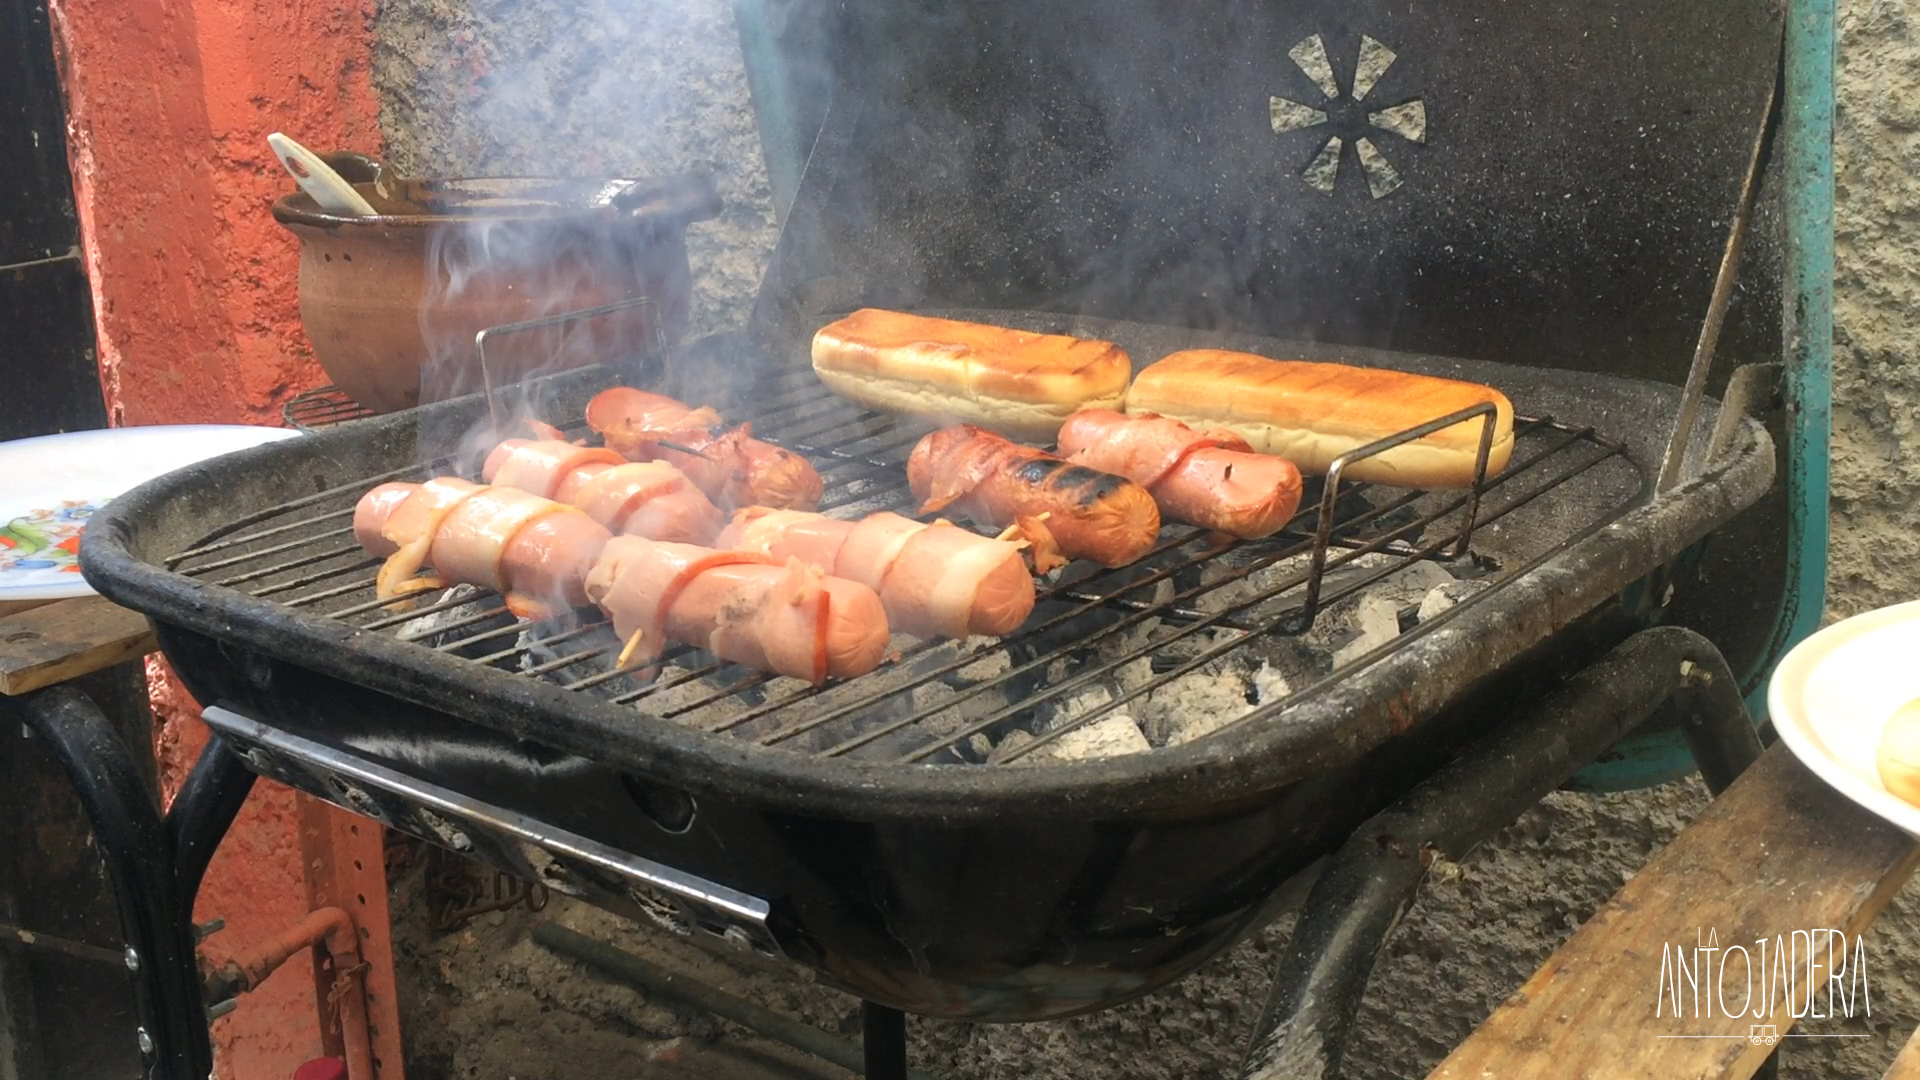 La Antojadera | Hot Dog al Carbón